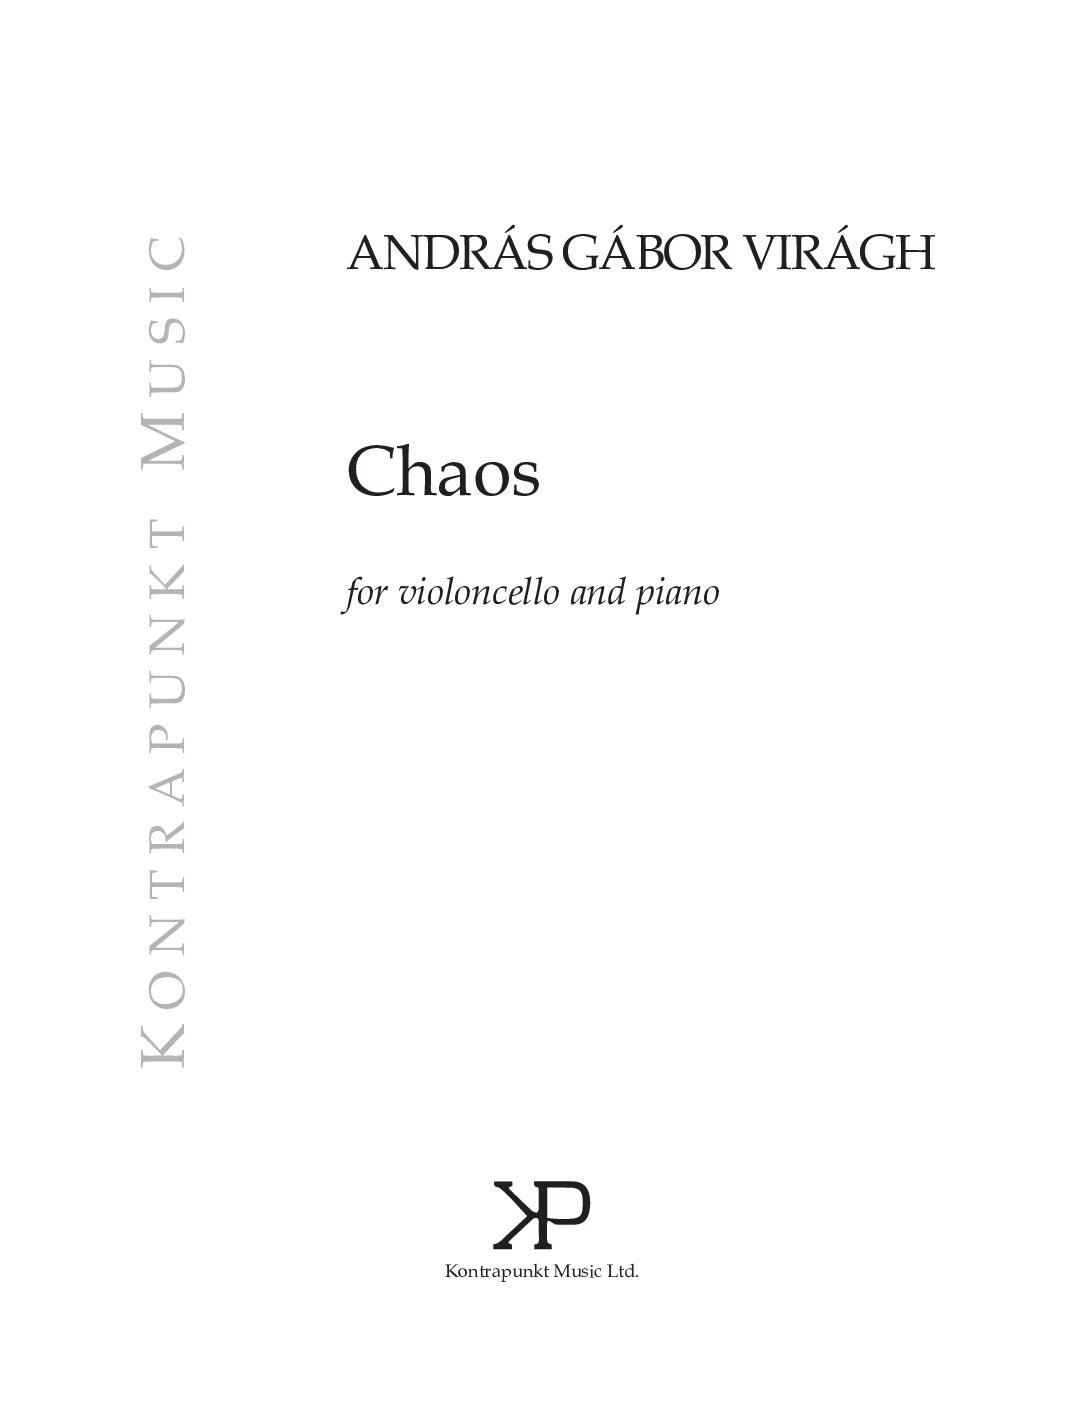 Virágh András Gábor: Chaos – for violoncello and piano